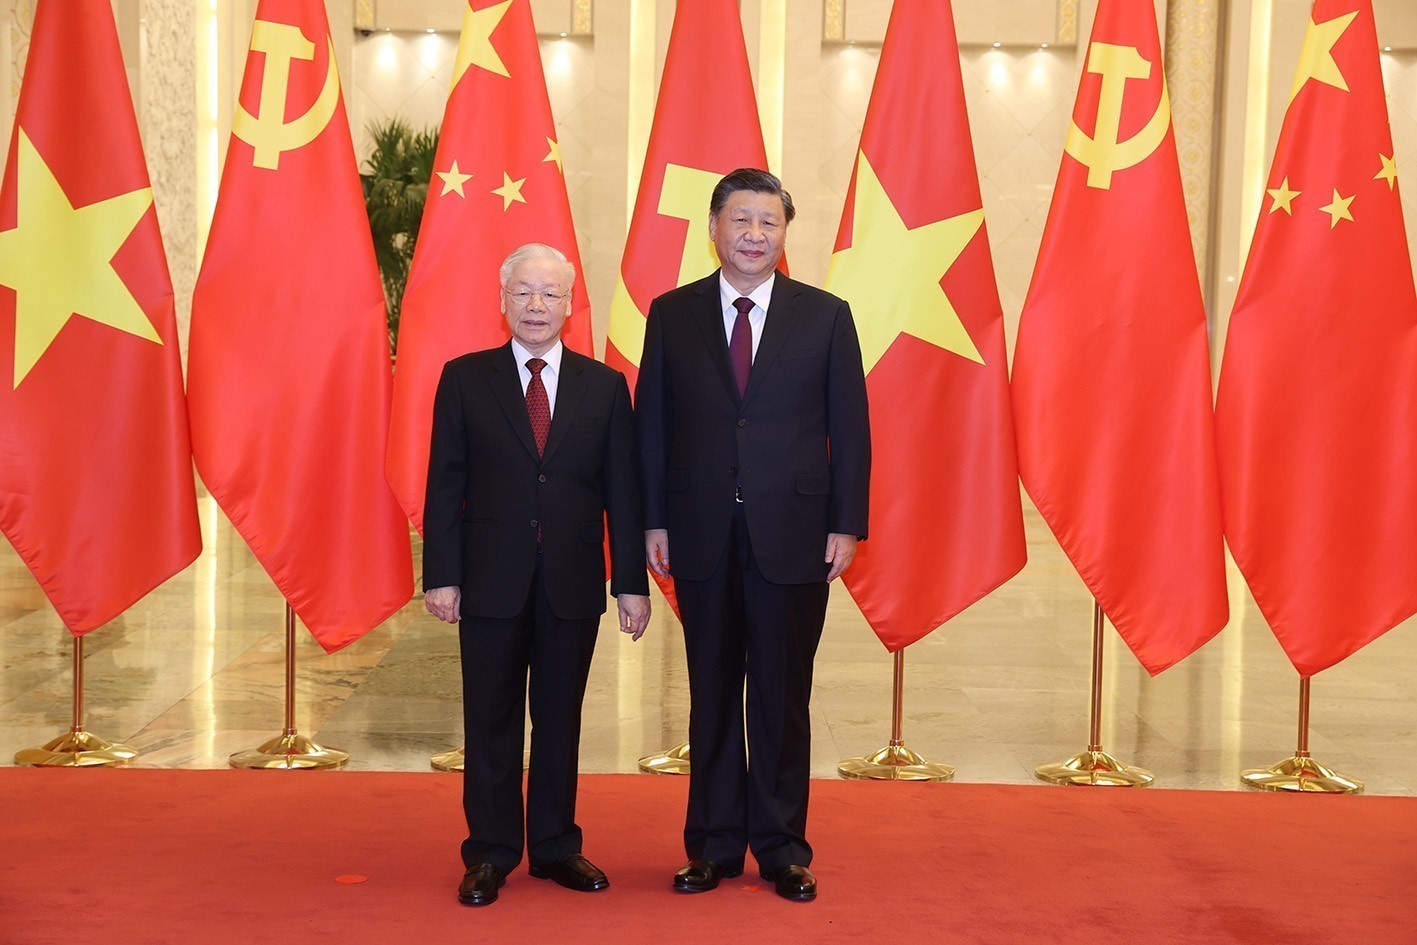 Chính sách đối Trung Quốc của Việt Nam đã nhận được sự đánh giá cao từ các quốc gia trong khu vực. Việt Nam đang thực hiện các biện pháp nhằm đảm bảo chủ quyền lãnh thổ và tự chủ về kinh tế, an ninh. Việt Nam cũng cởi mở về hợp tác và trao đổi văn hóa với Trung Quốc, nhằm đưa quan hệ hai bên lên một tầm cao mới.